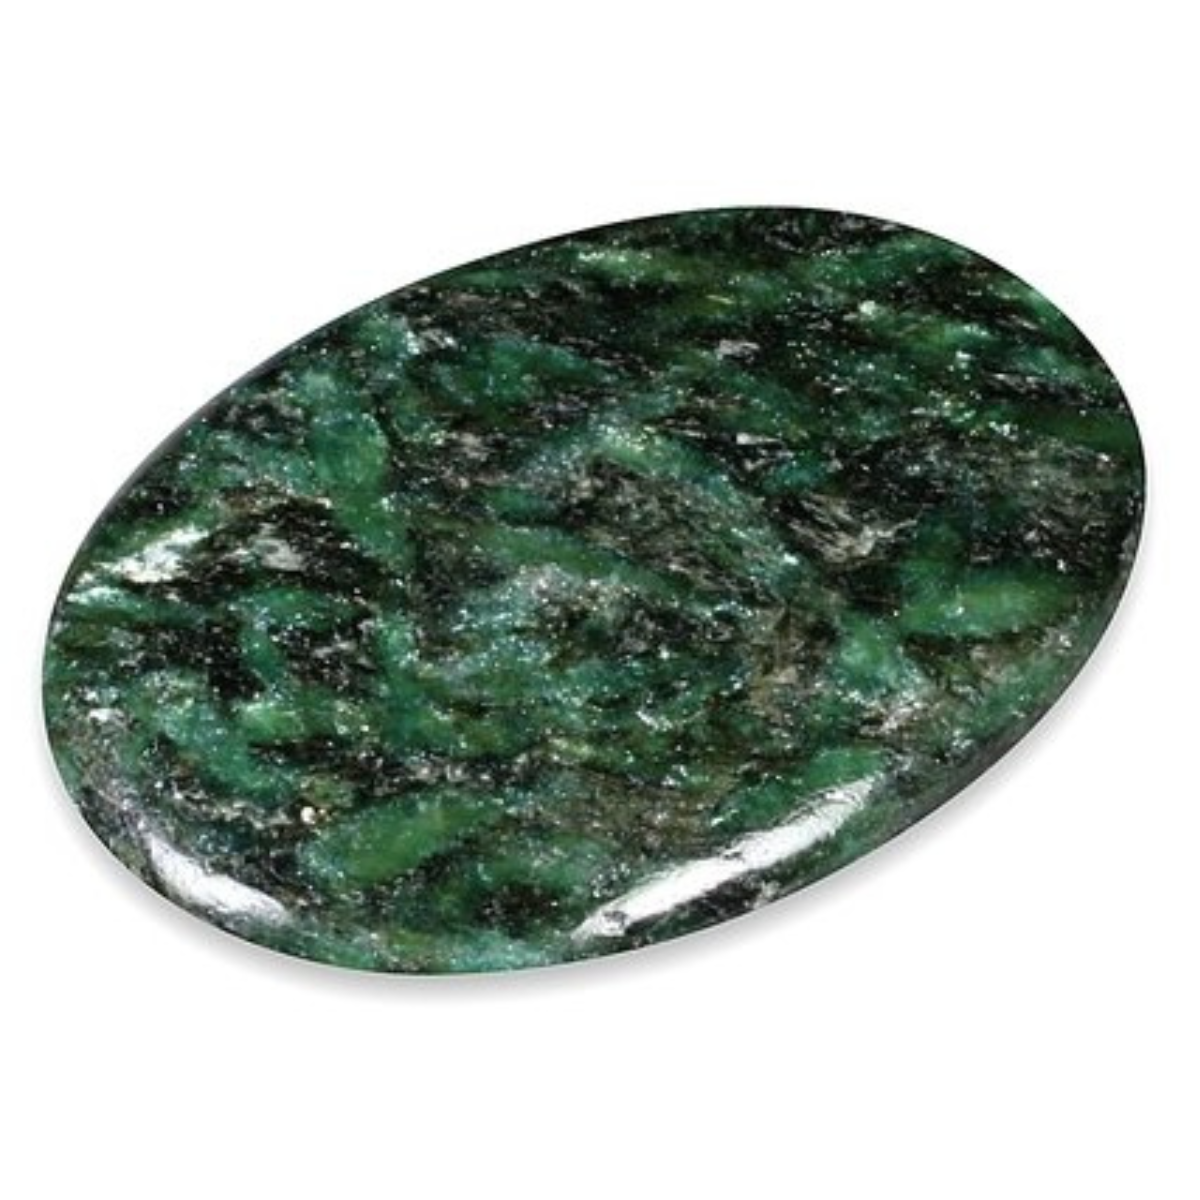  مسبحة حجر الفوكسايت الأخضر وعظم الإبل العربي - ٩٩ خرزة ( ٨ ملم)